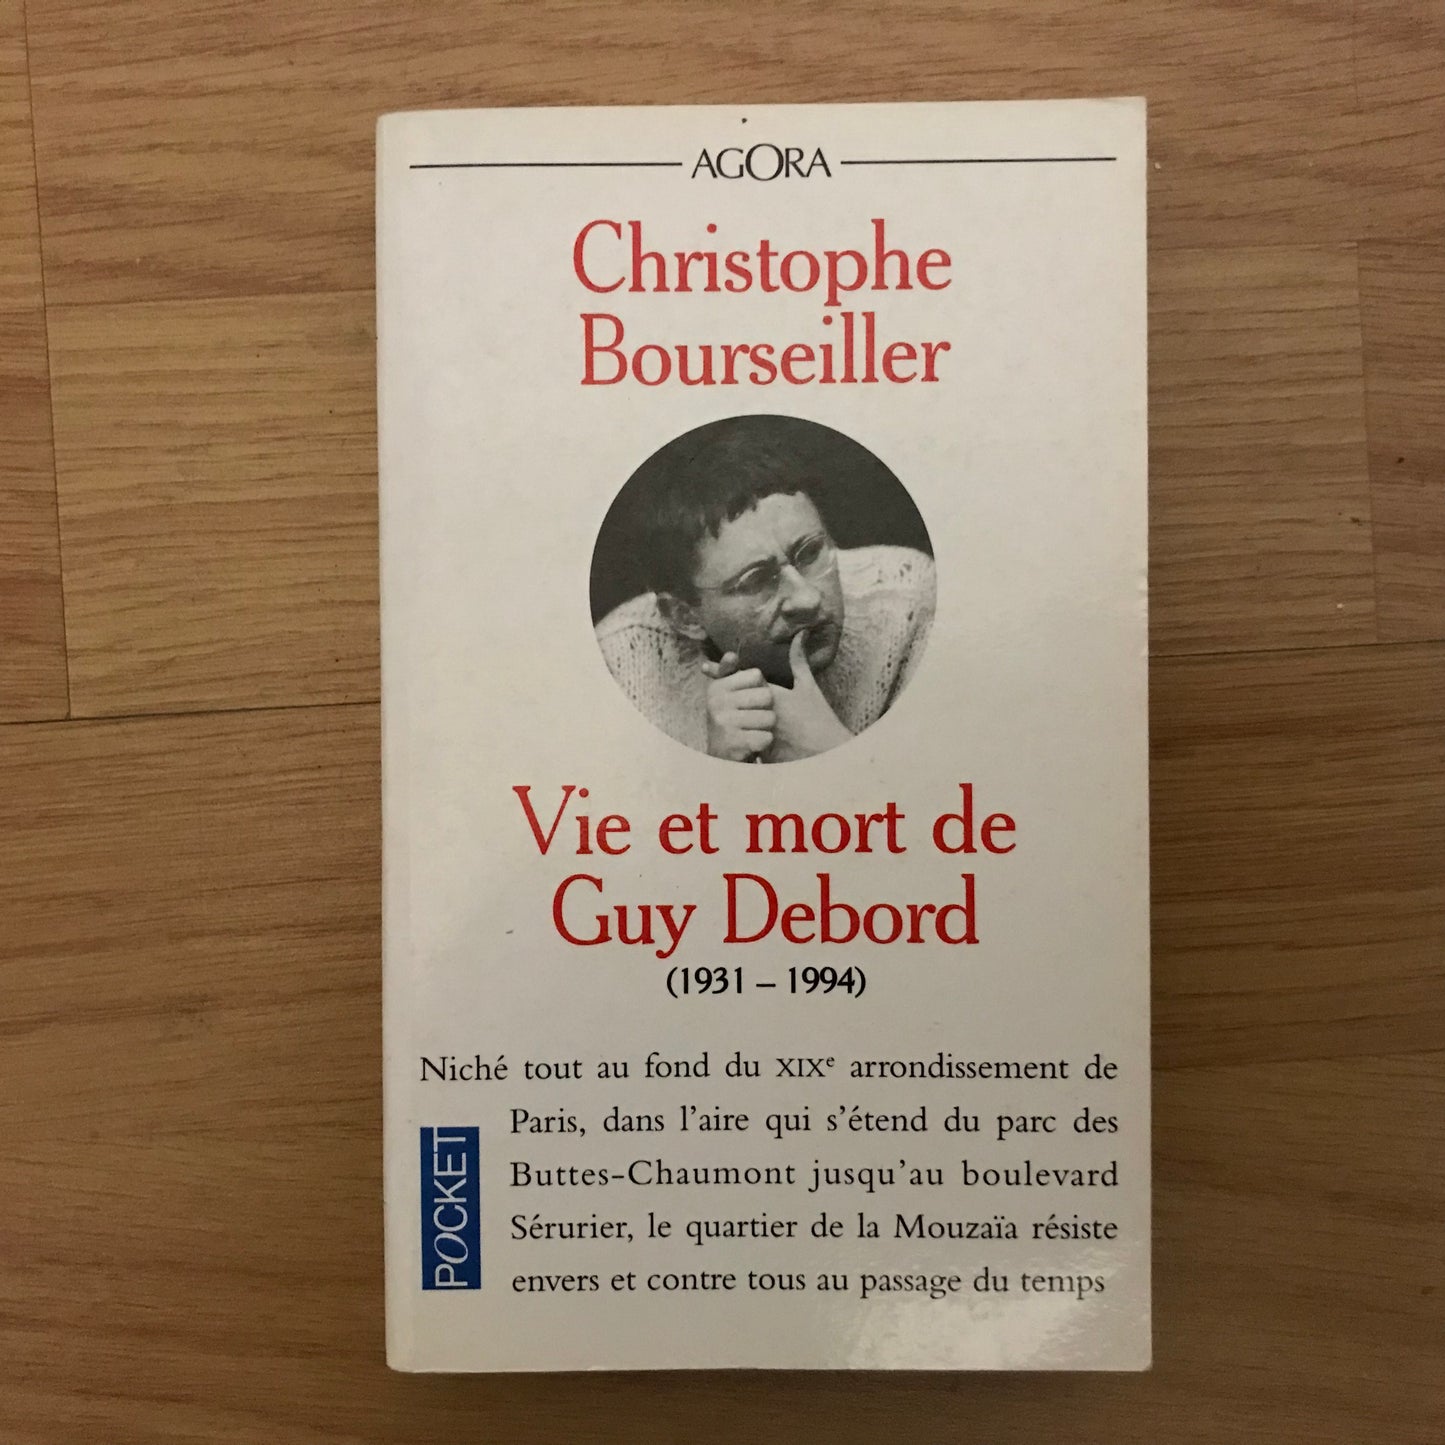 Guy Debord, Vie et mort de (1931-1994) - Christophe Bourseiller